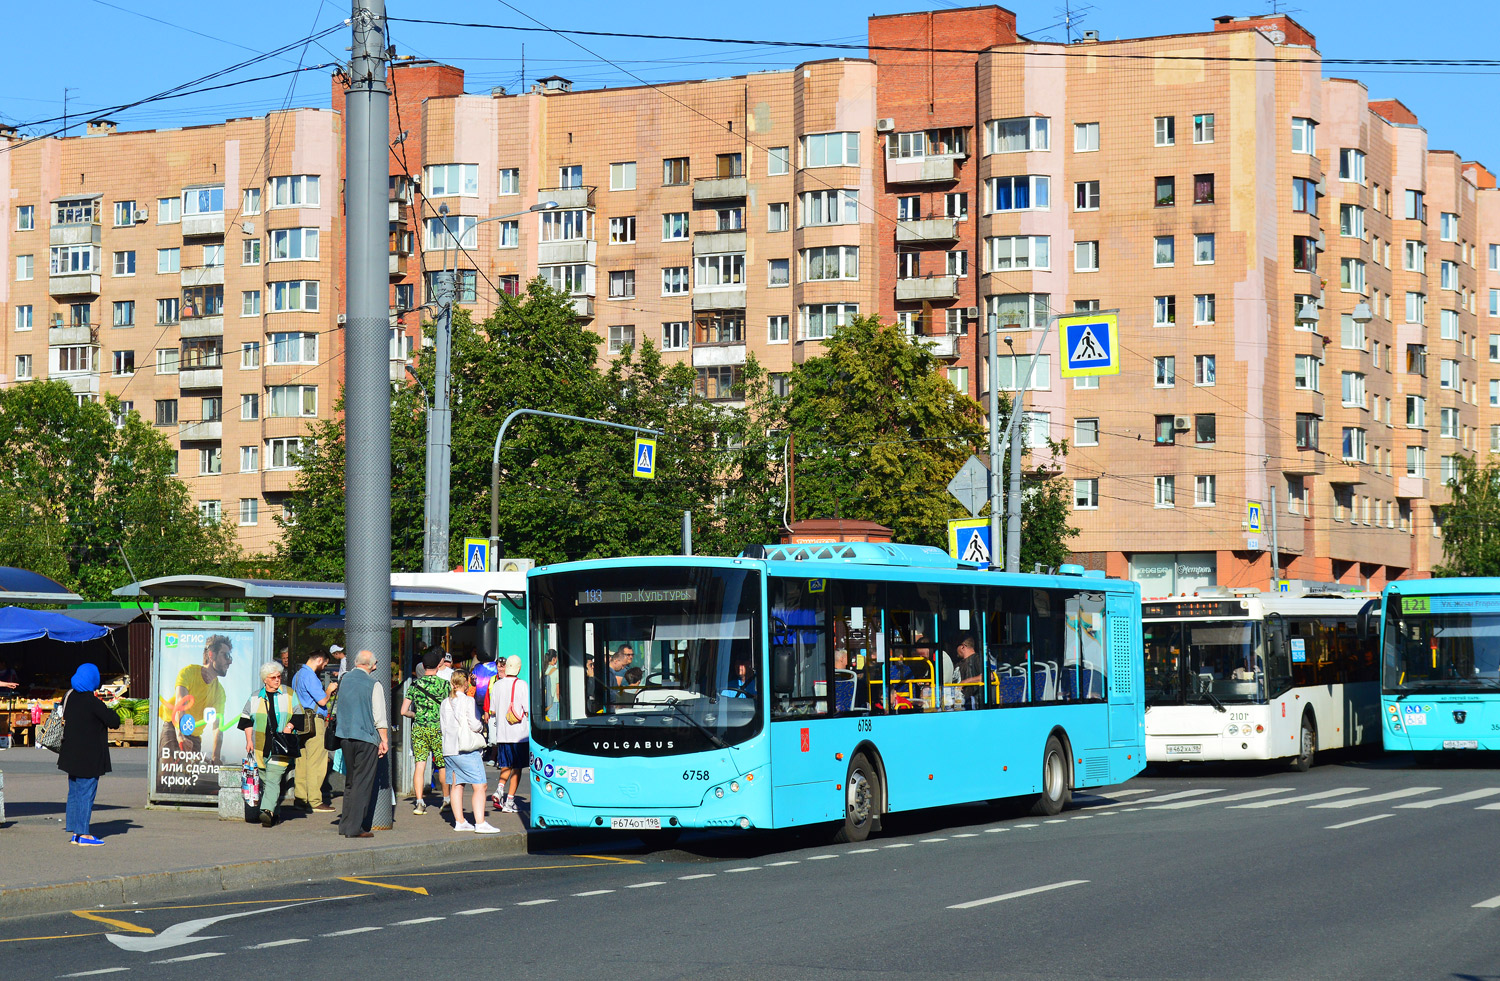 Sankt Peterburgas, Volgabus-5270.G2 (LNG) Nr. 6758